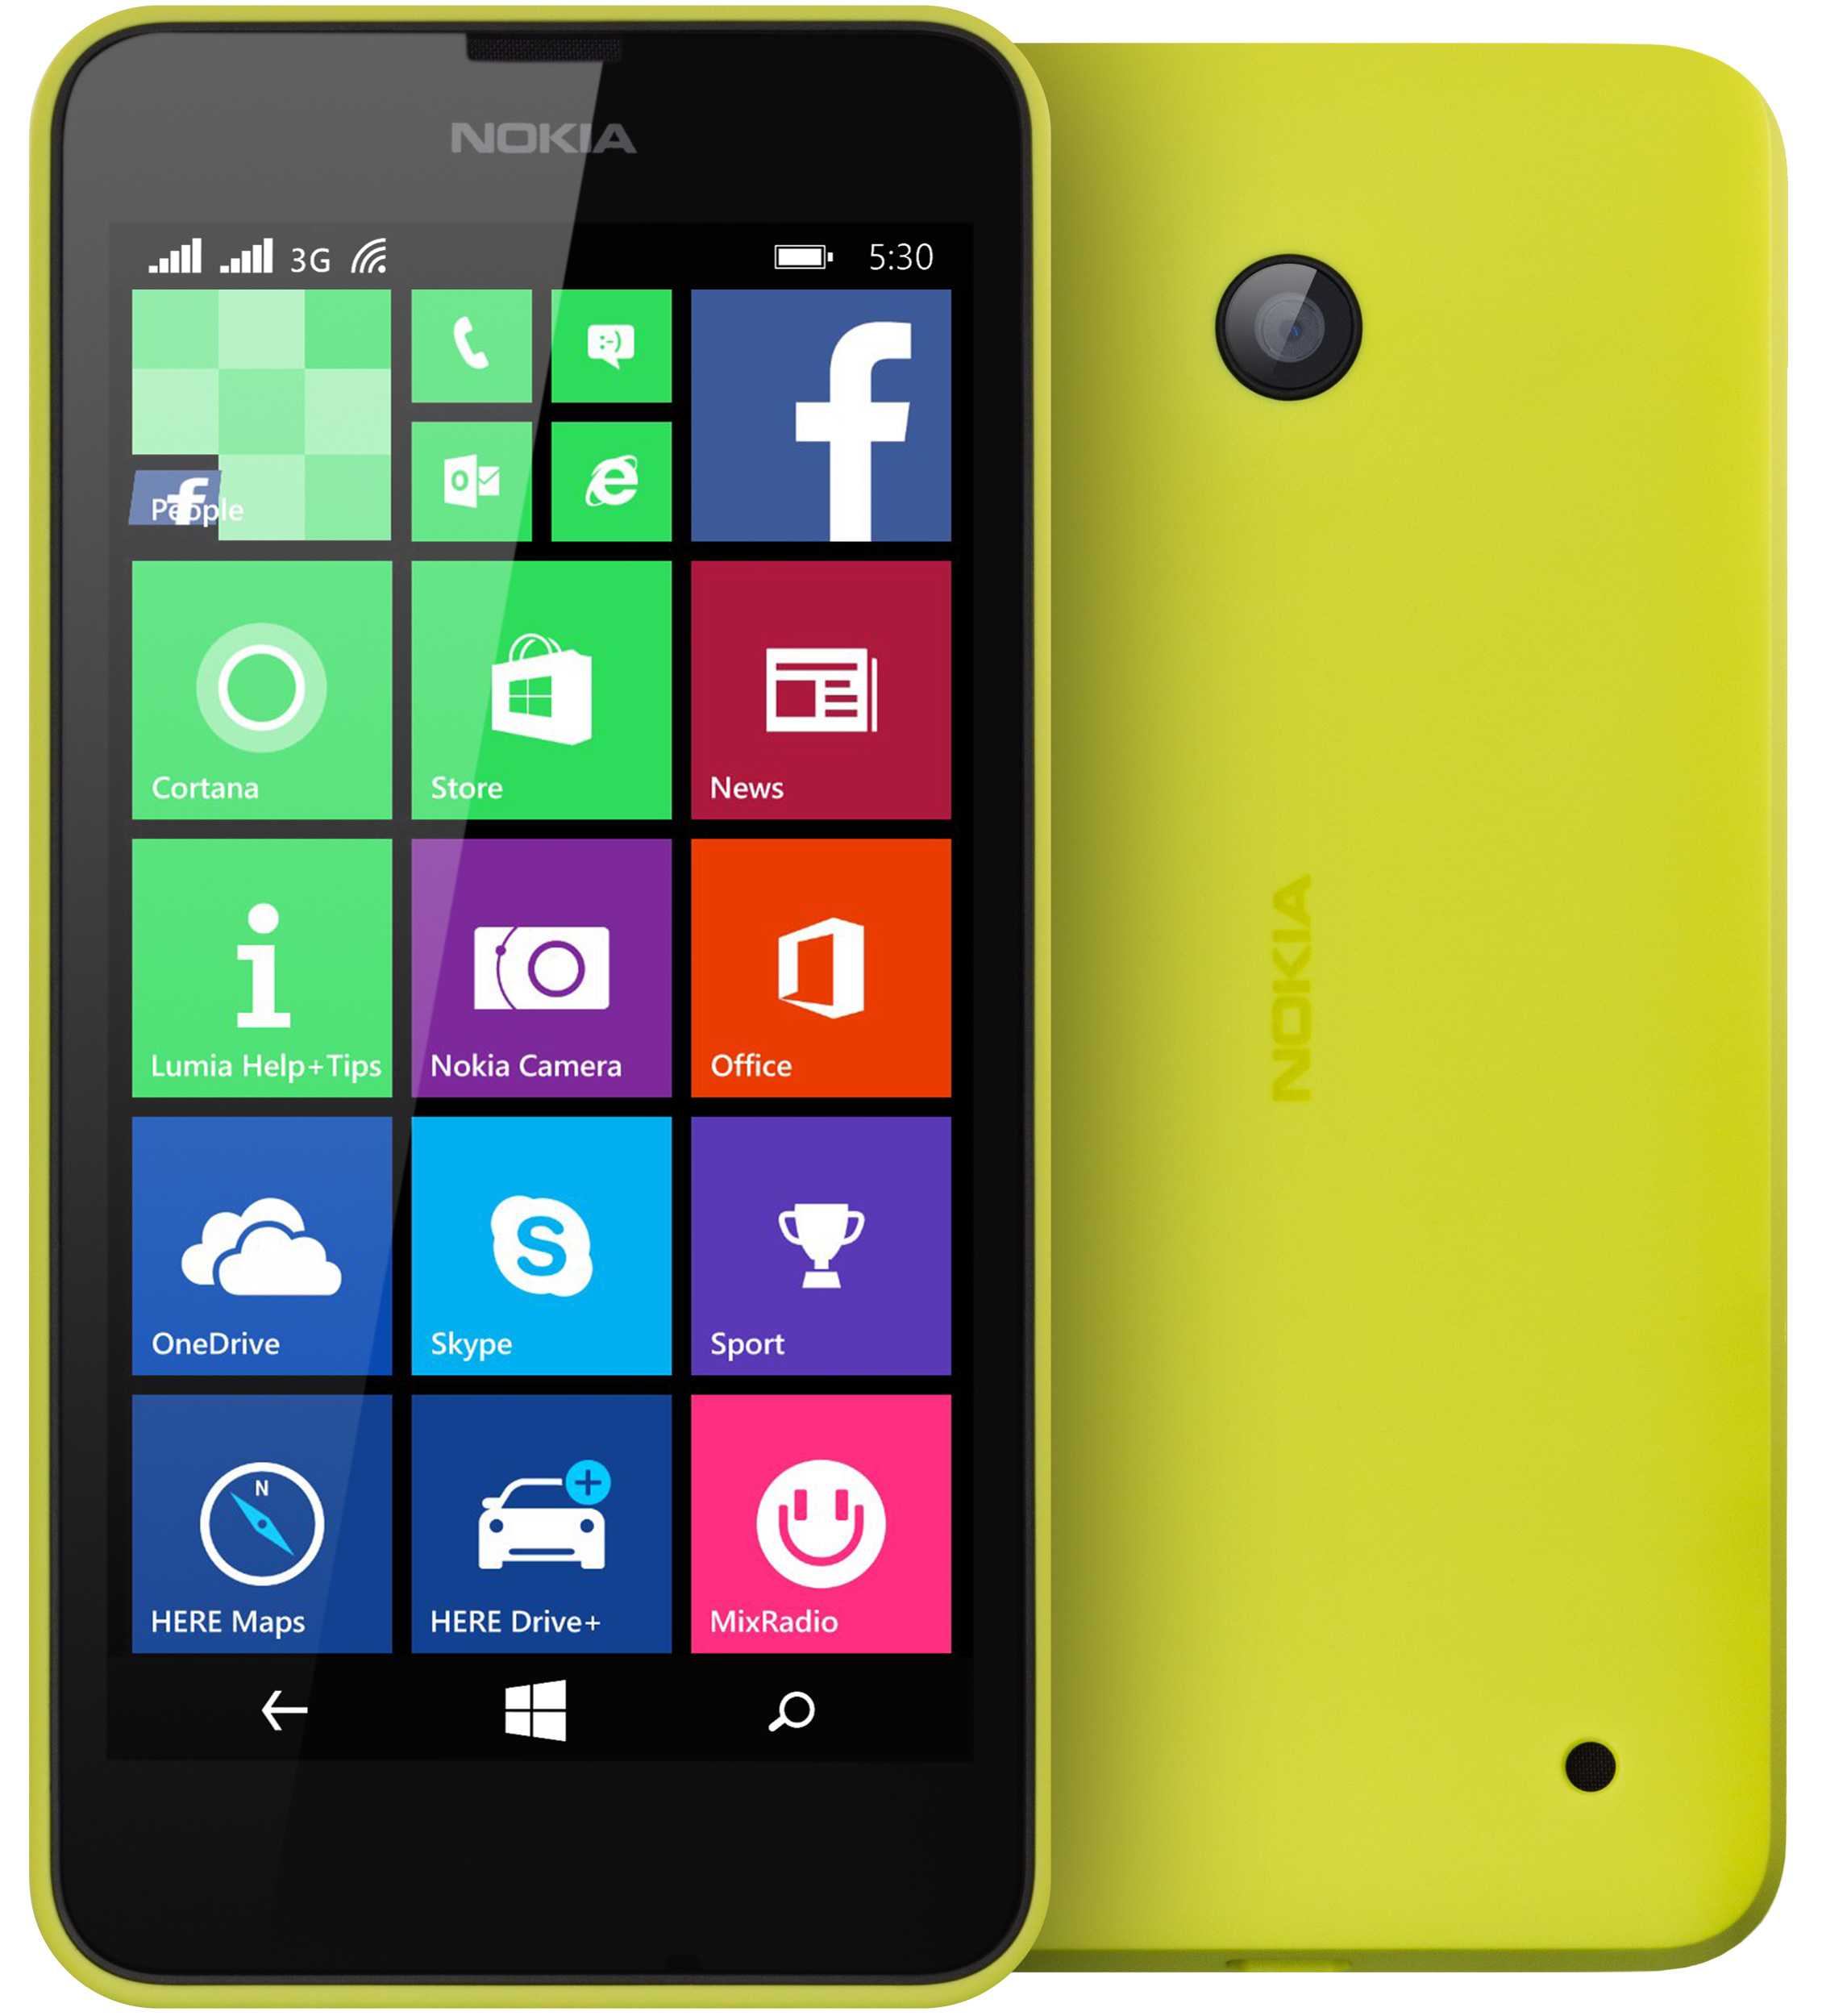 Nokia lumia 630 dual sim цена, где купить, сравнение цен